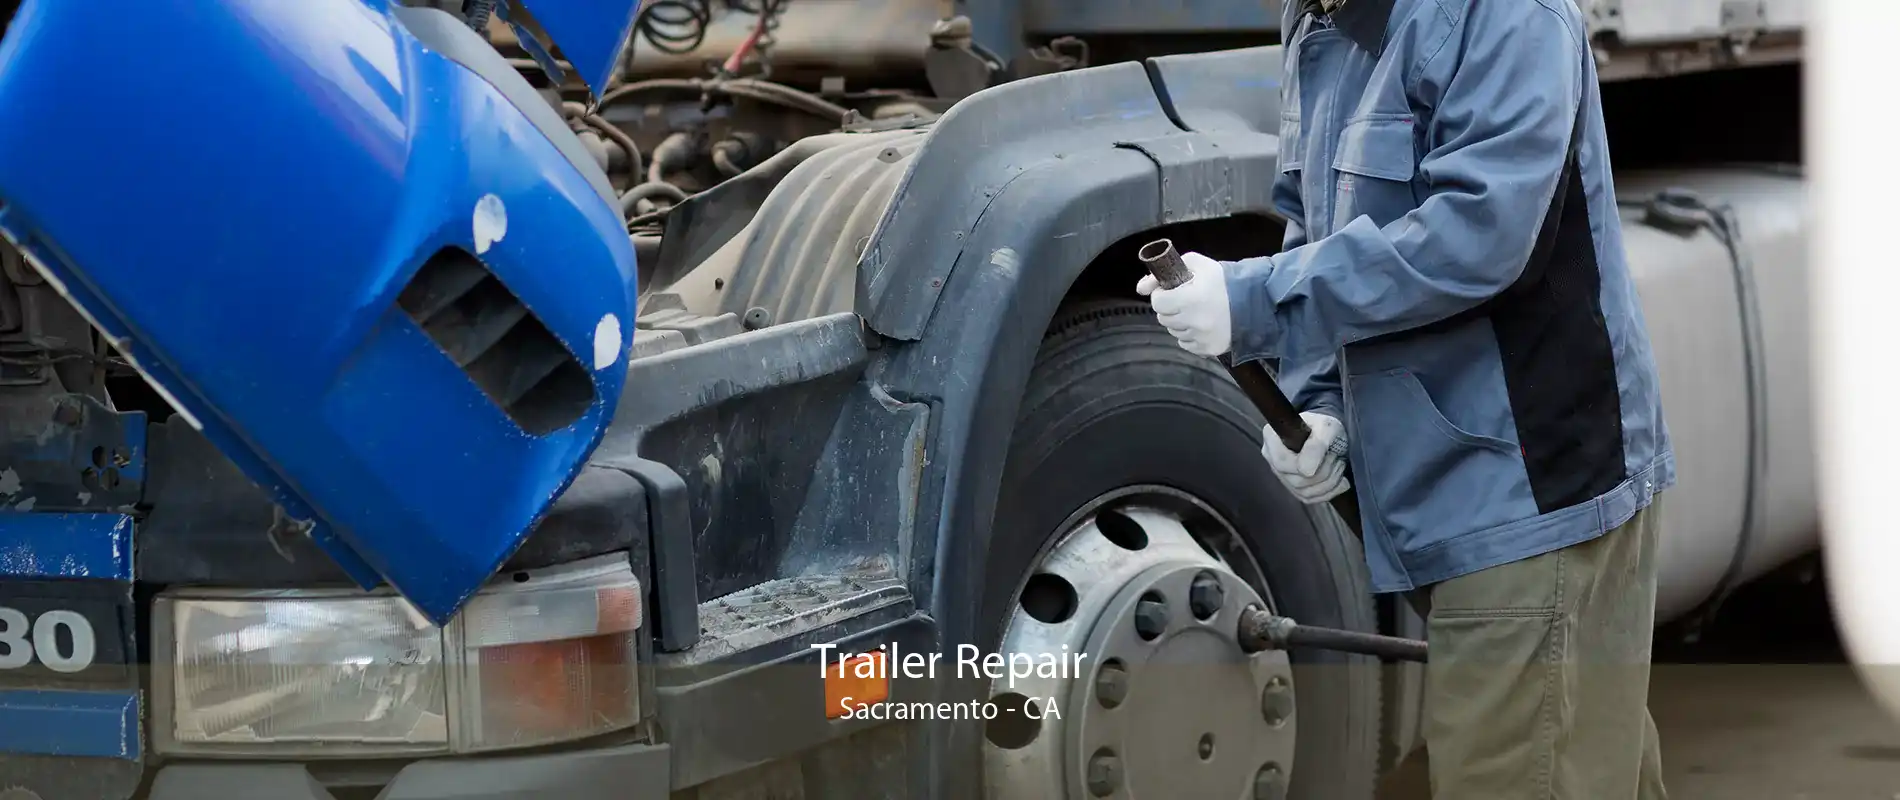 Trailer Repair Sacramento - CA